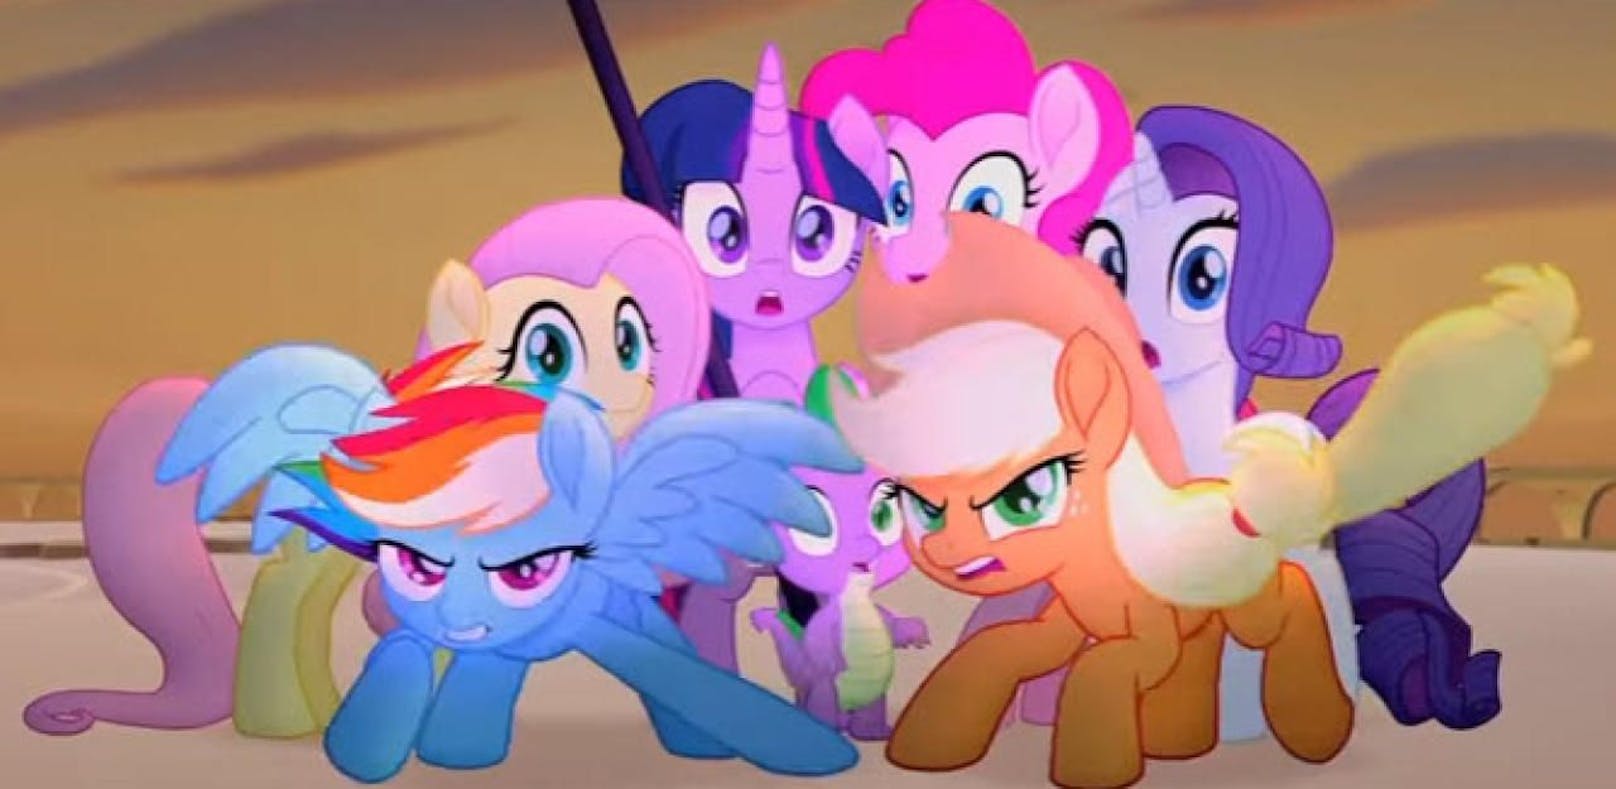 Kunterbunter erster Trailer von "My Little Pony"